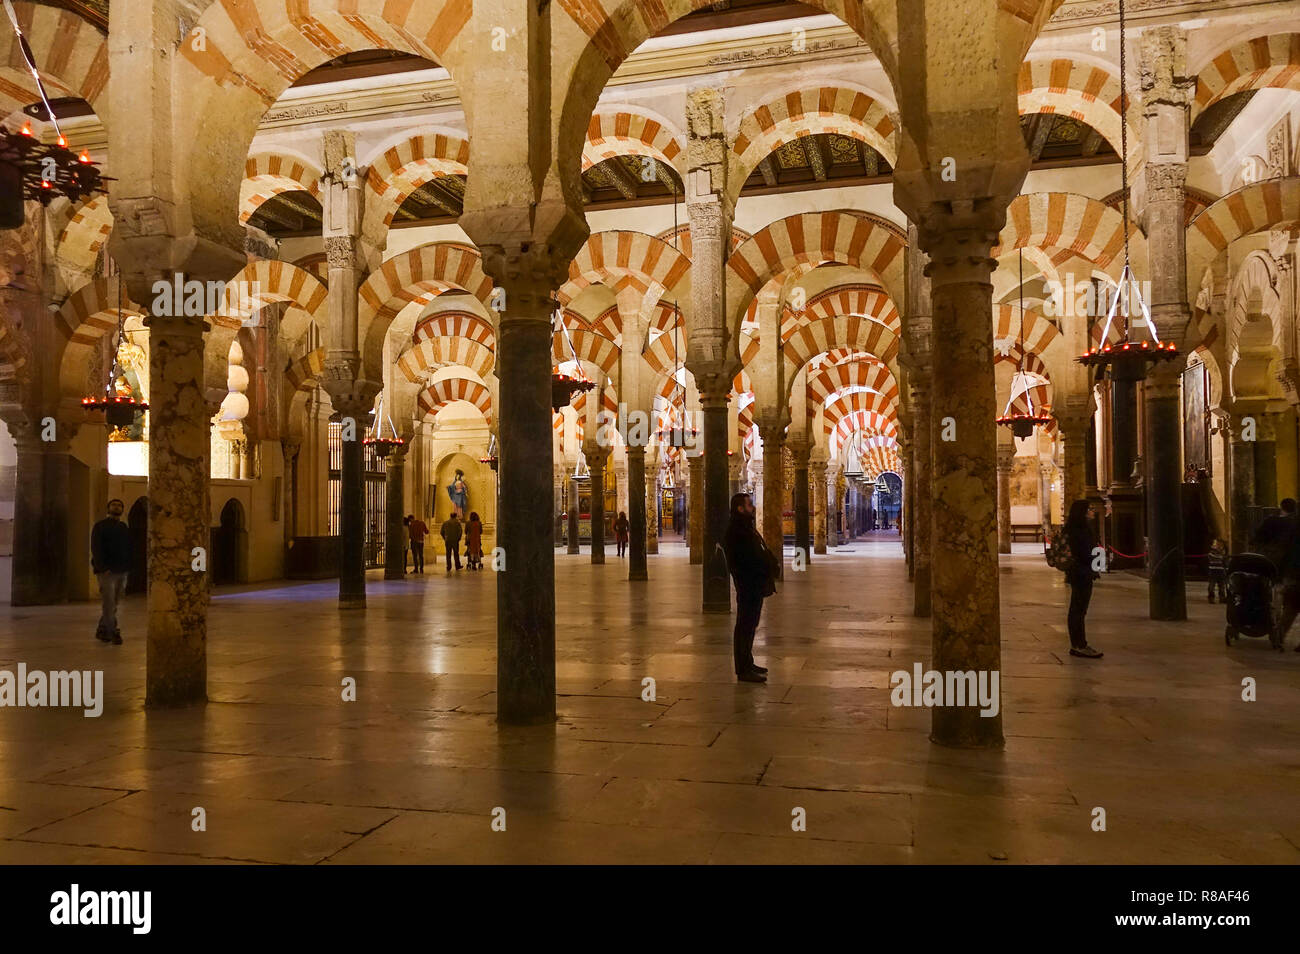 Innenraum der Moschee von Cordoba, Kathedrale, Córdoba, Große Moschee von Córdoba, La Mezquita, Andalusien, Südspanien. Stockfoto